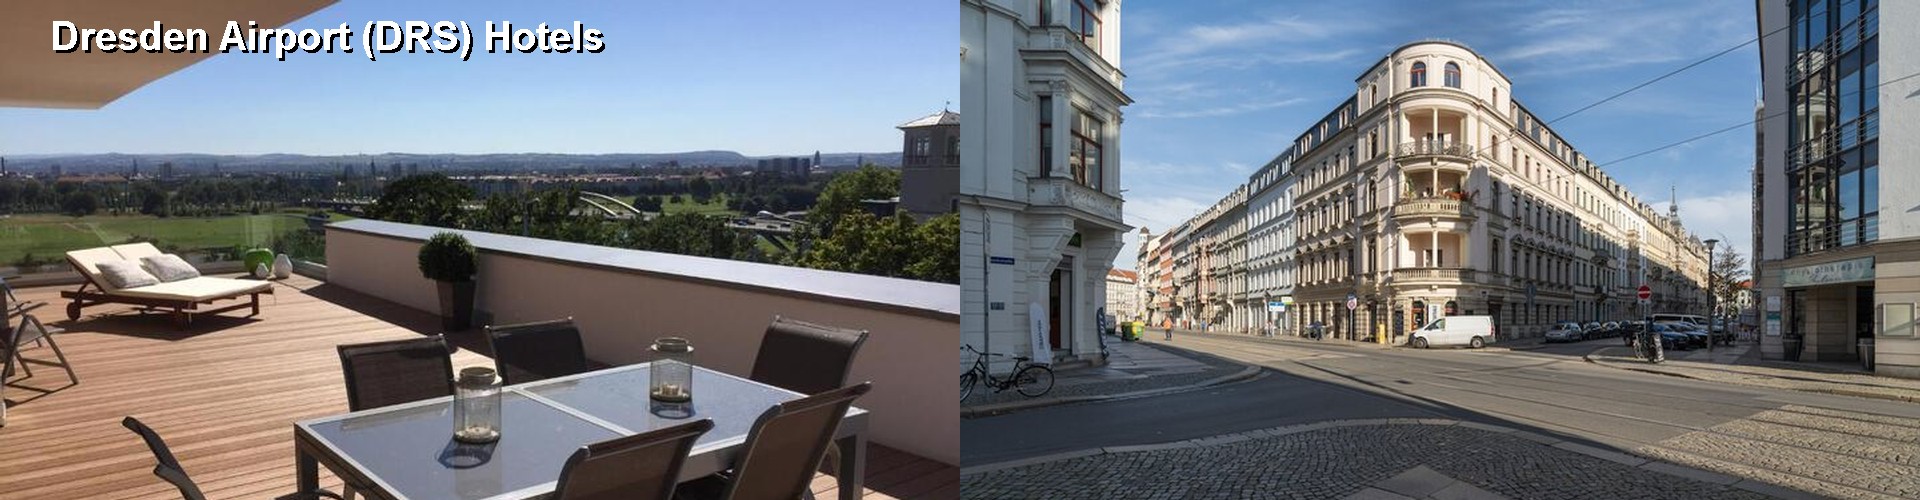 5 Best Hotels near Dresden Airport (DRS)